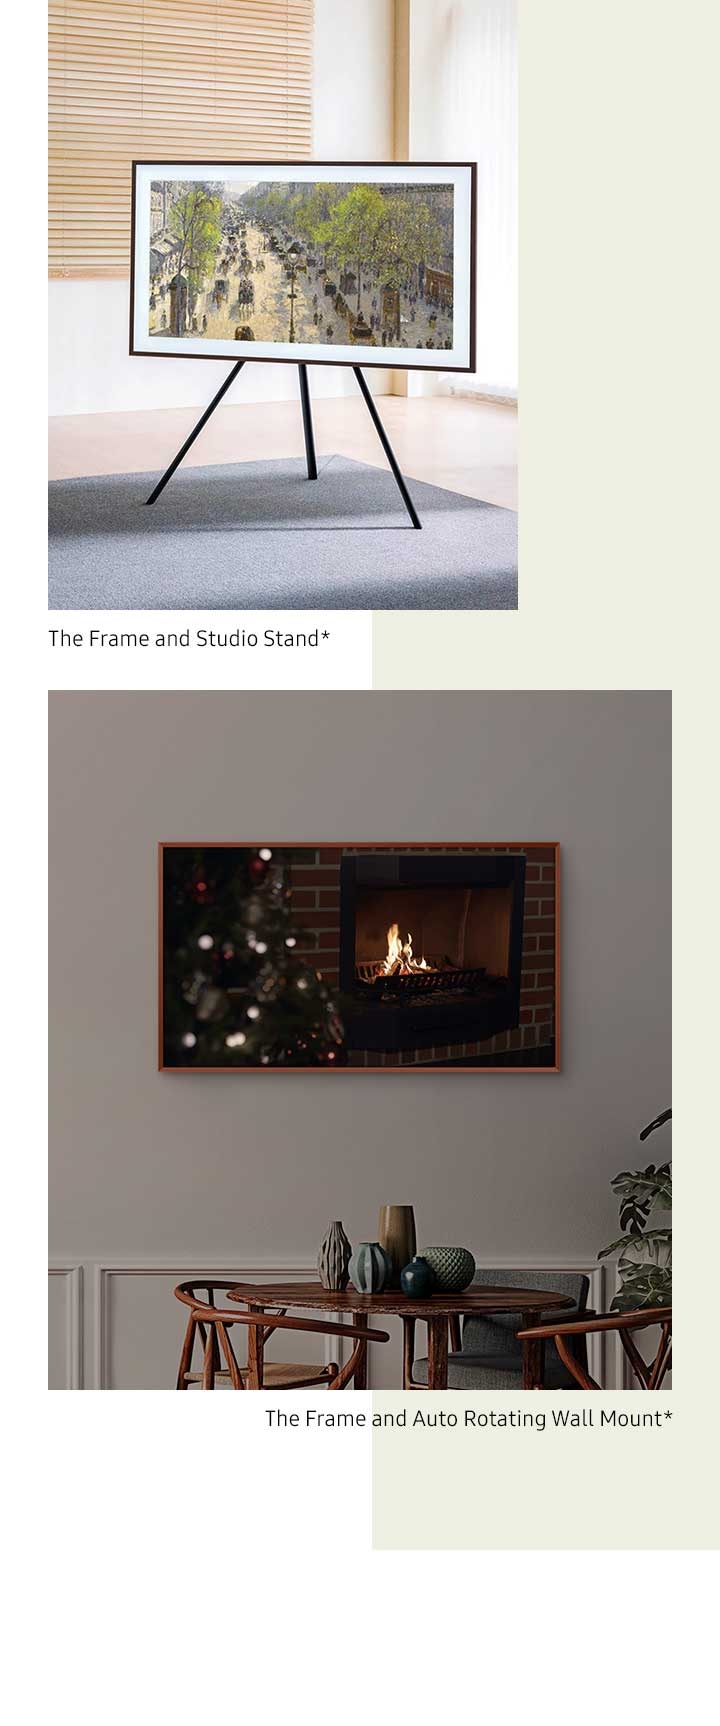 The Frame sur un support mural auto-pivotant bascule du mode paysage au mode portrait*. The Frame est monté sur un pied Studio*.